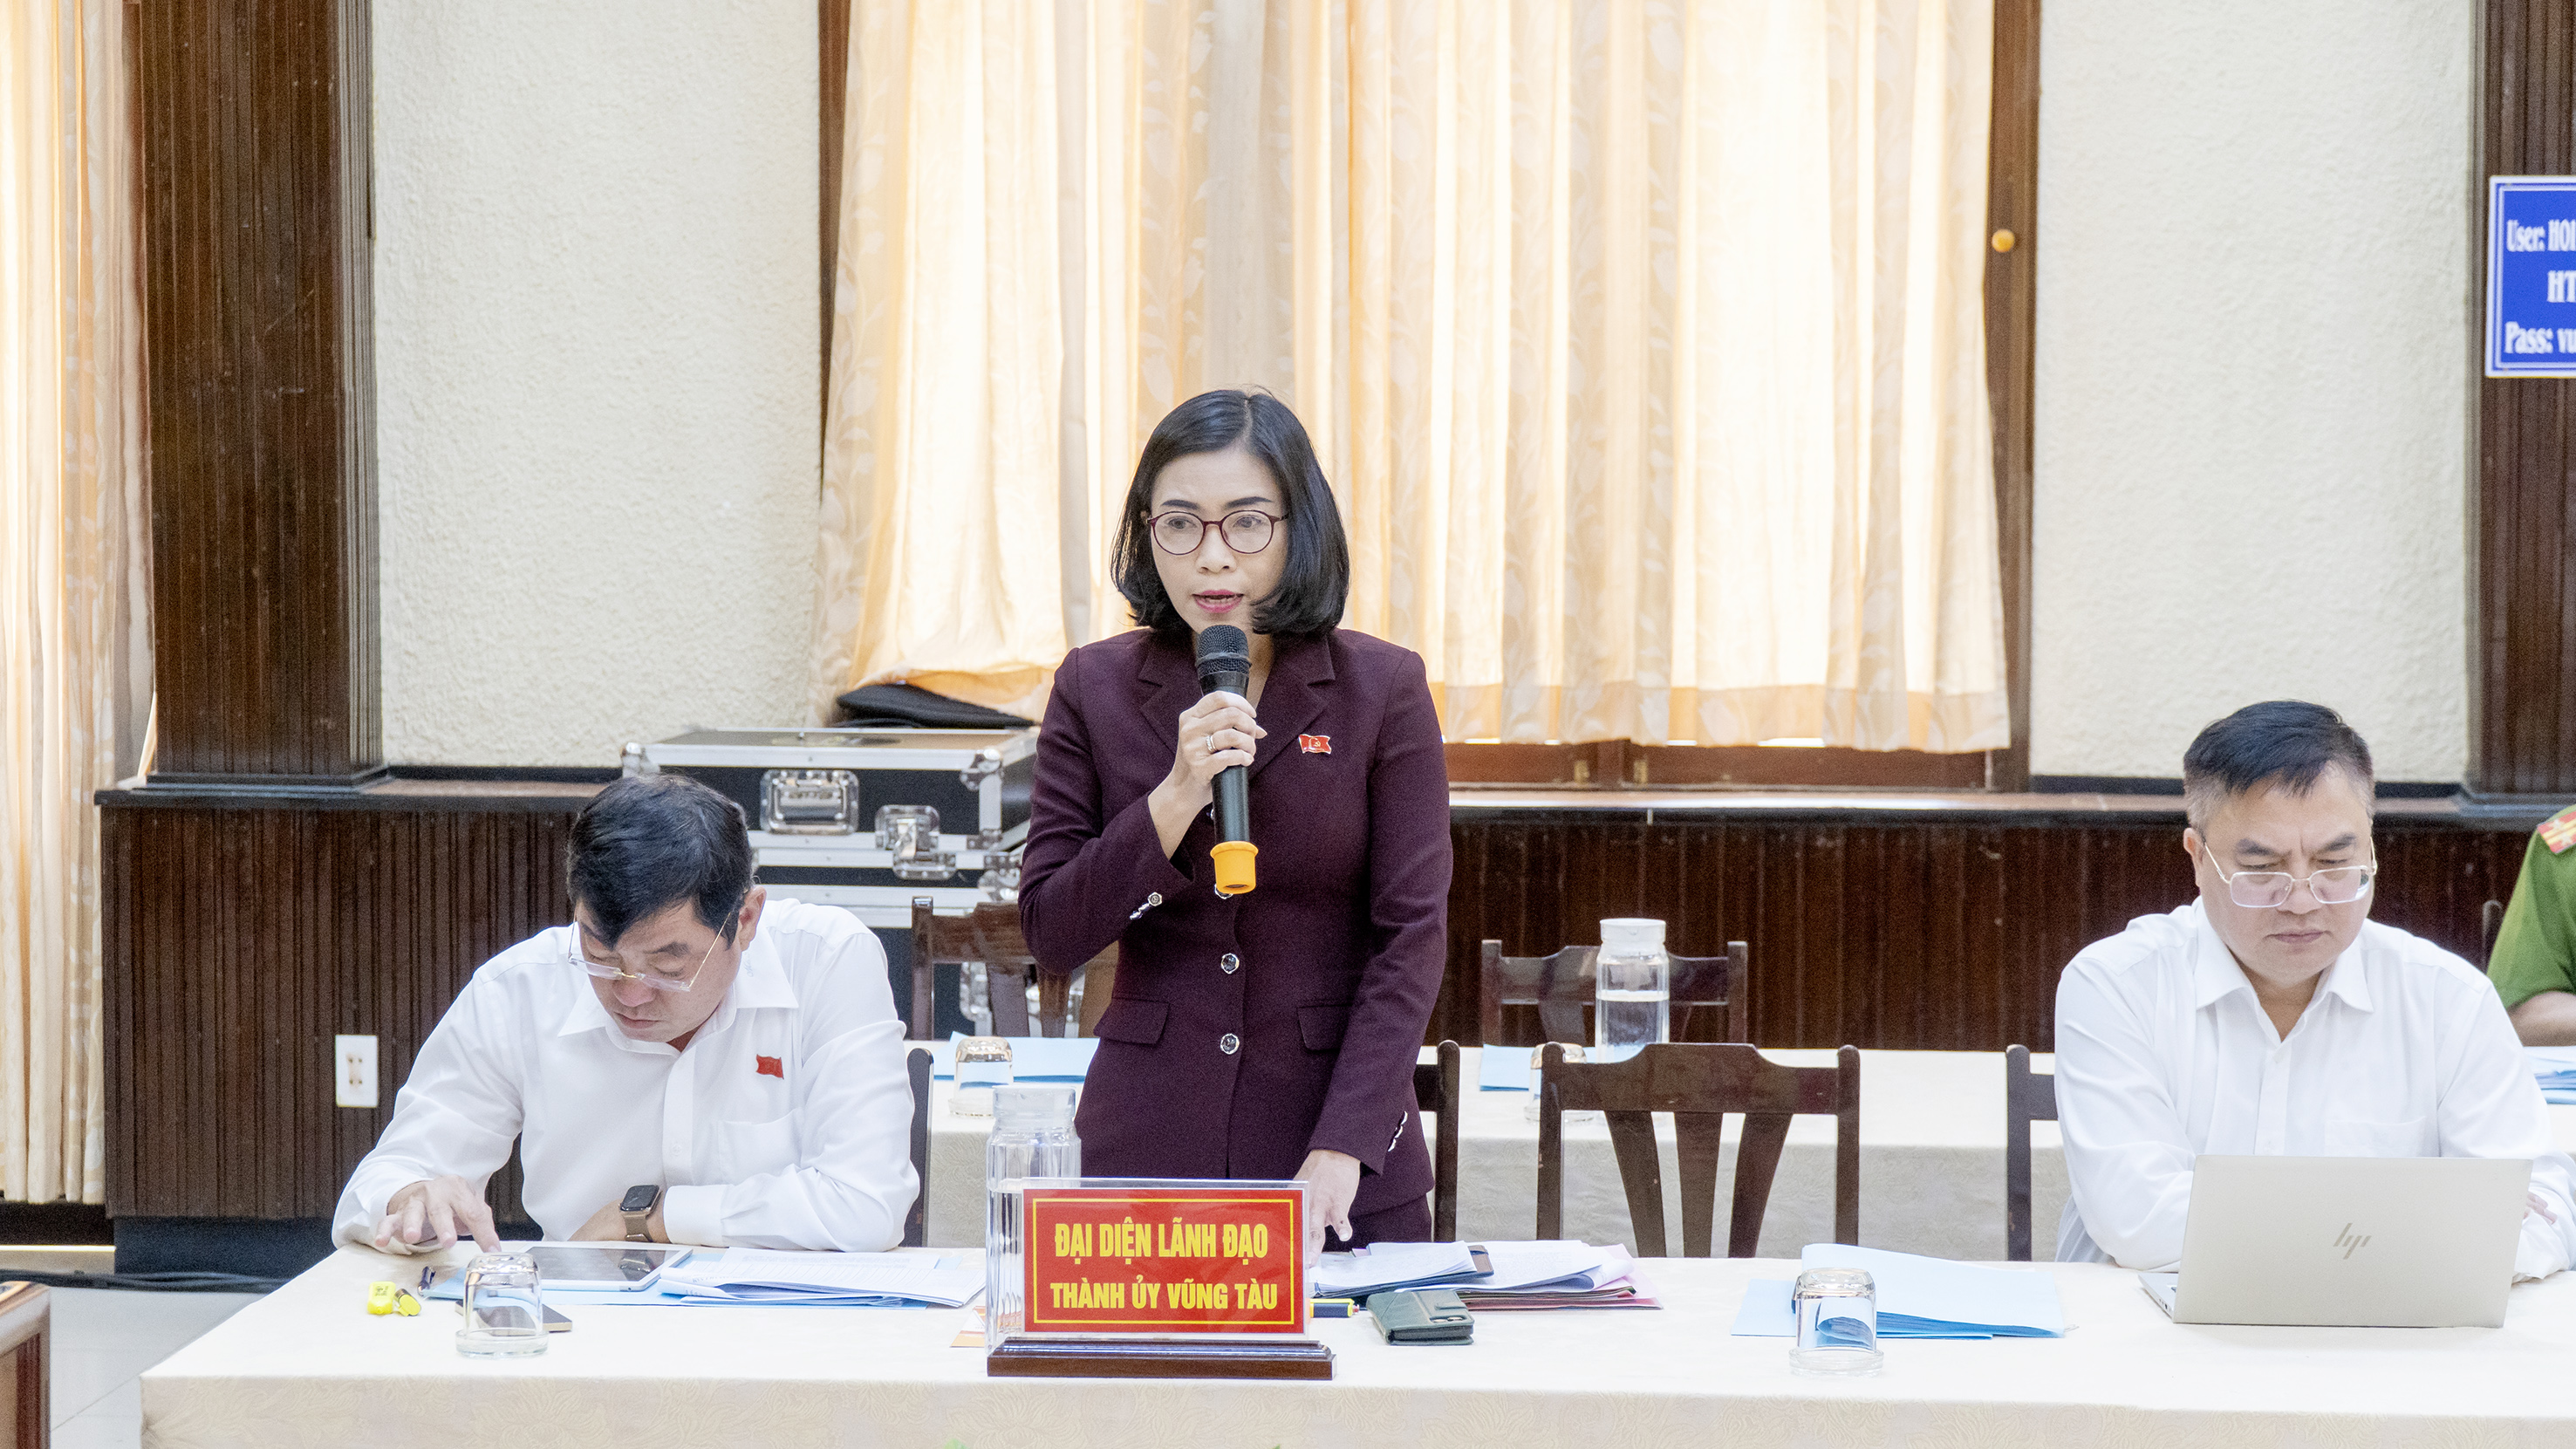 Đại diện lãnh đạo Thành ủy Vũng Tàu phát biểu tham luận tại cuộc họp giao ban.